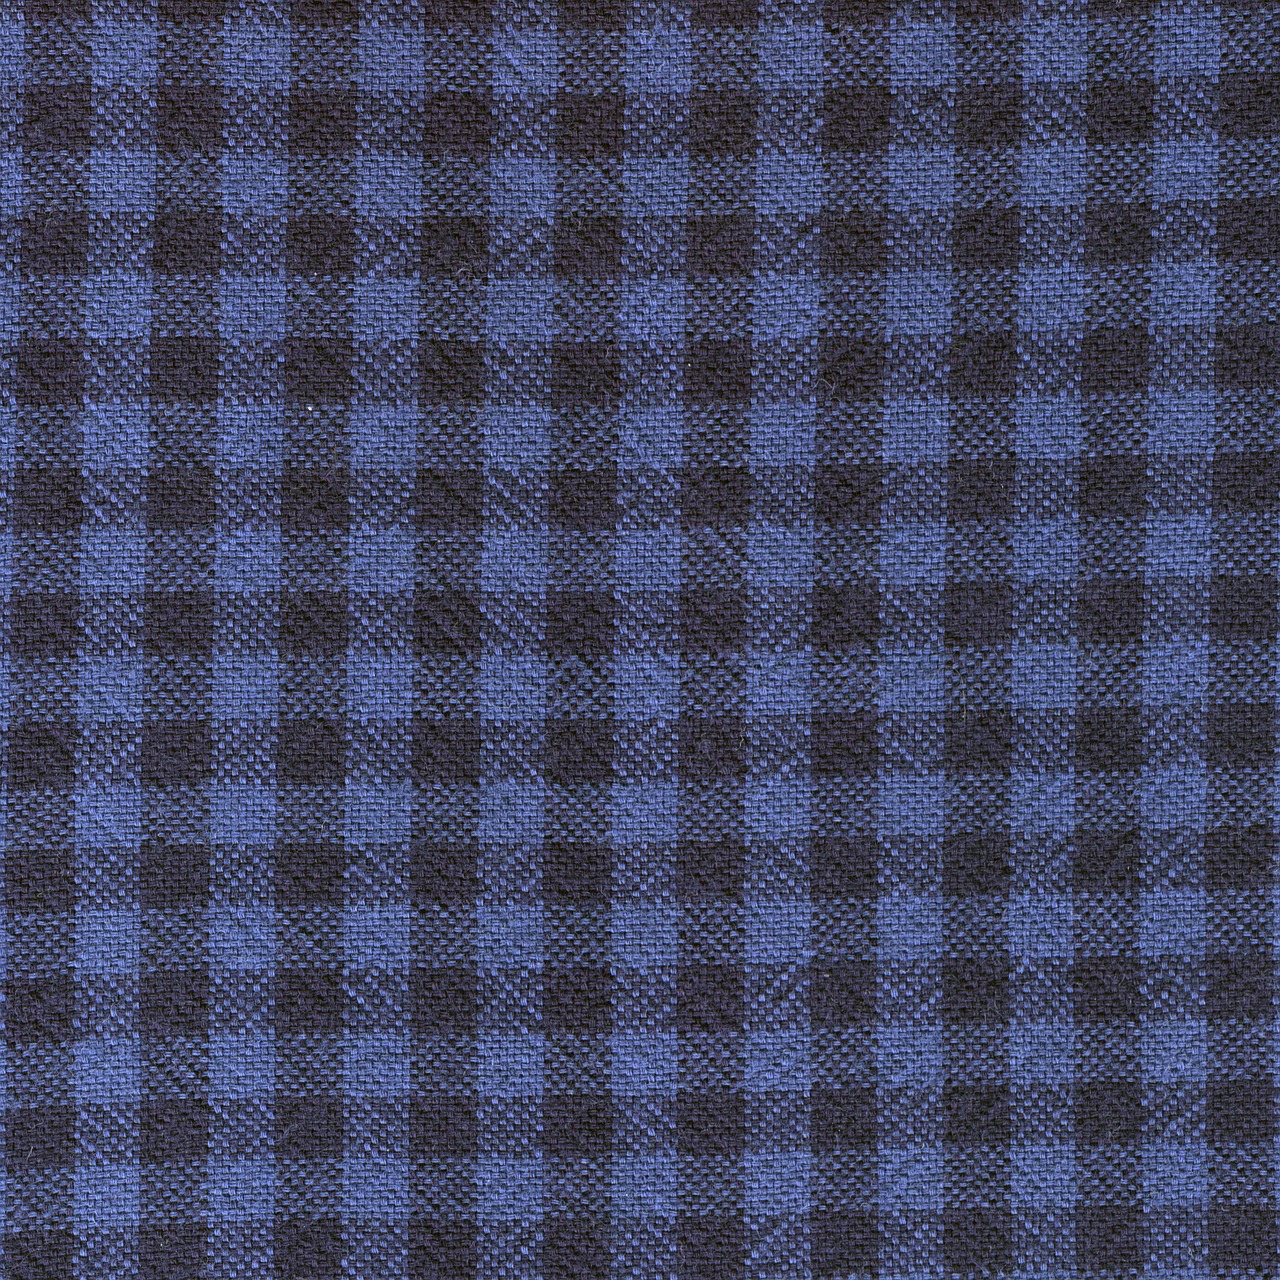 checkered fabric pattern free photo